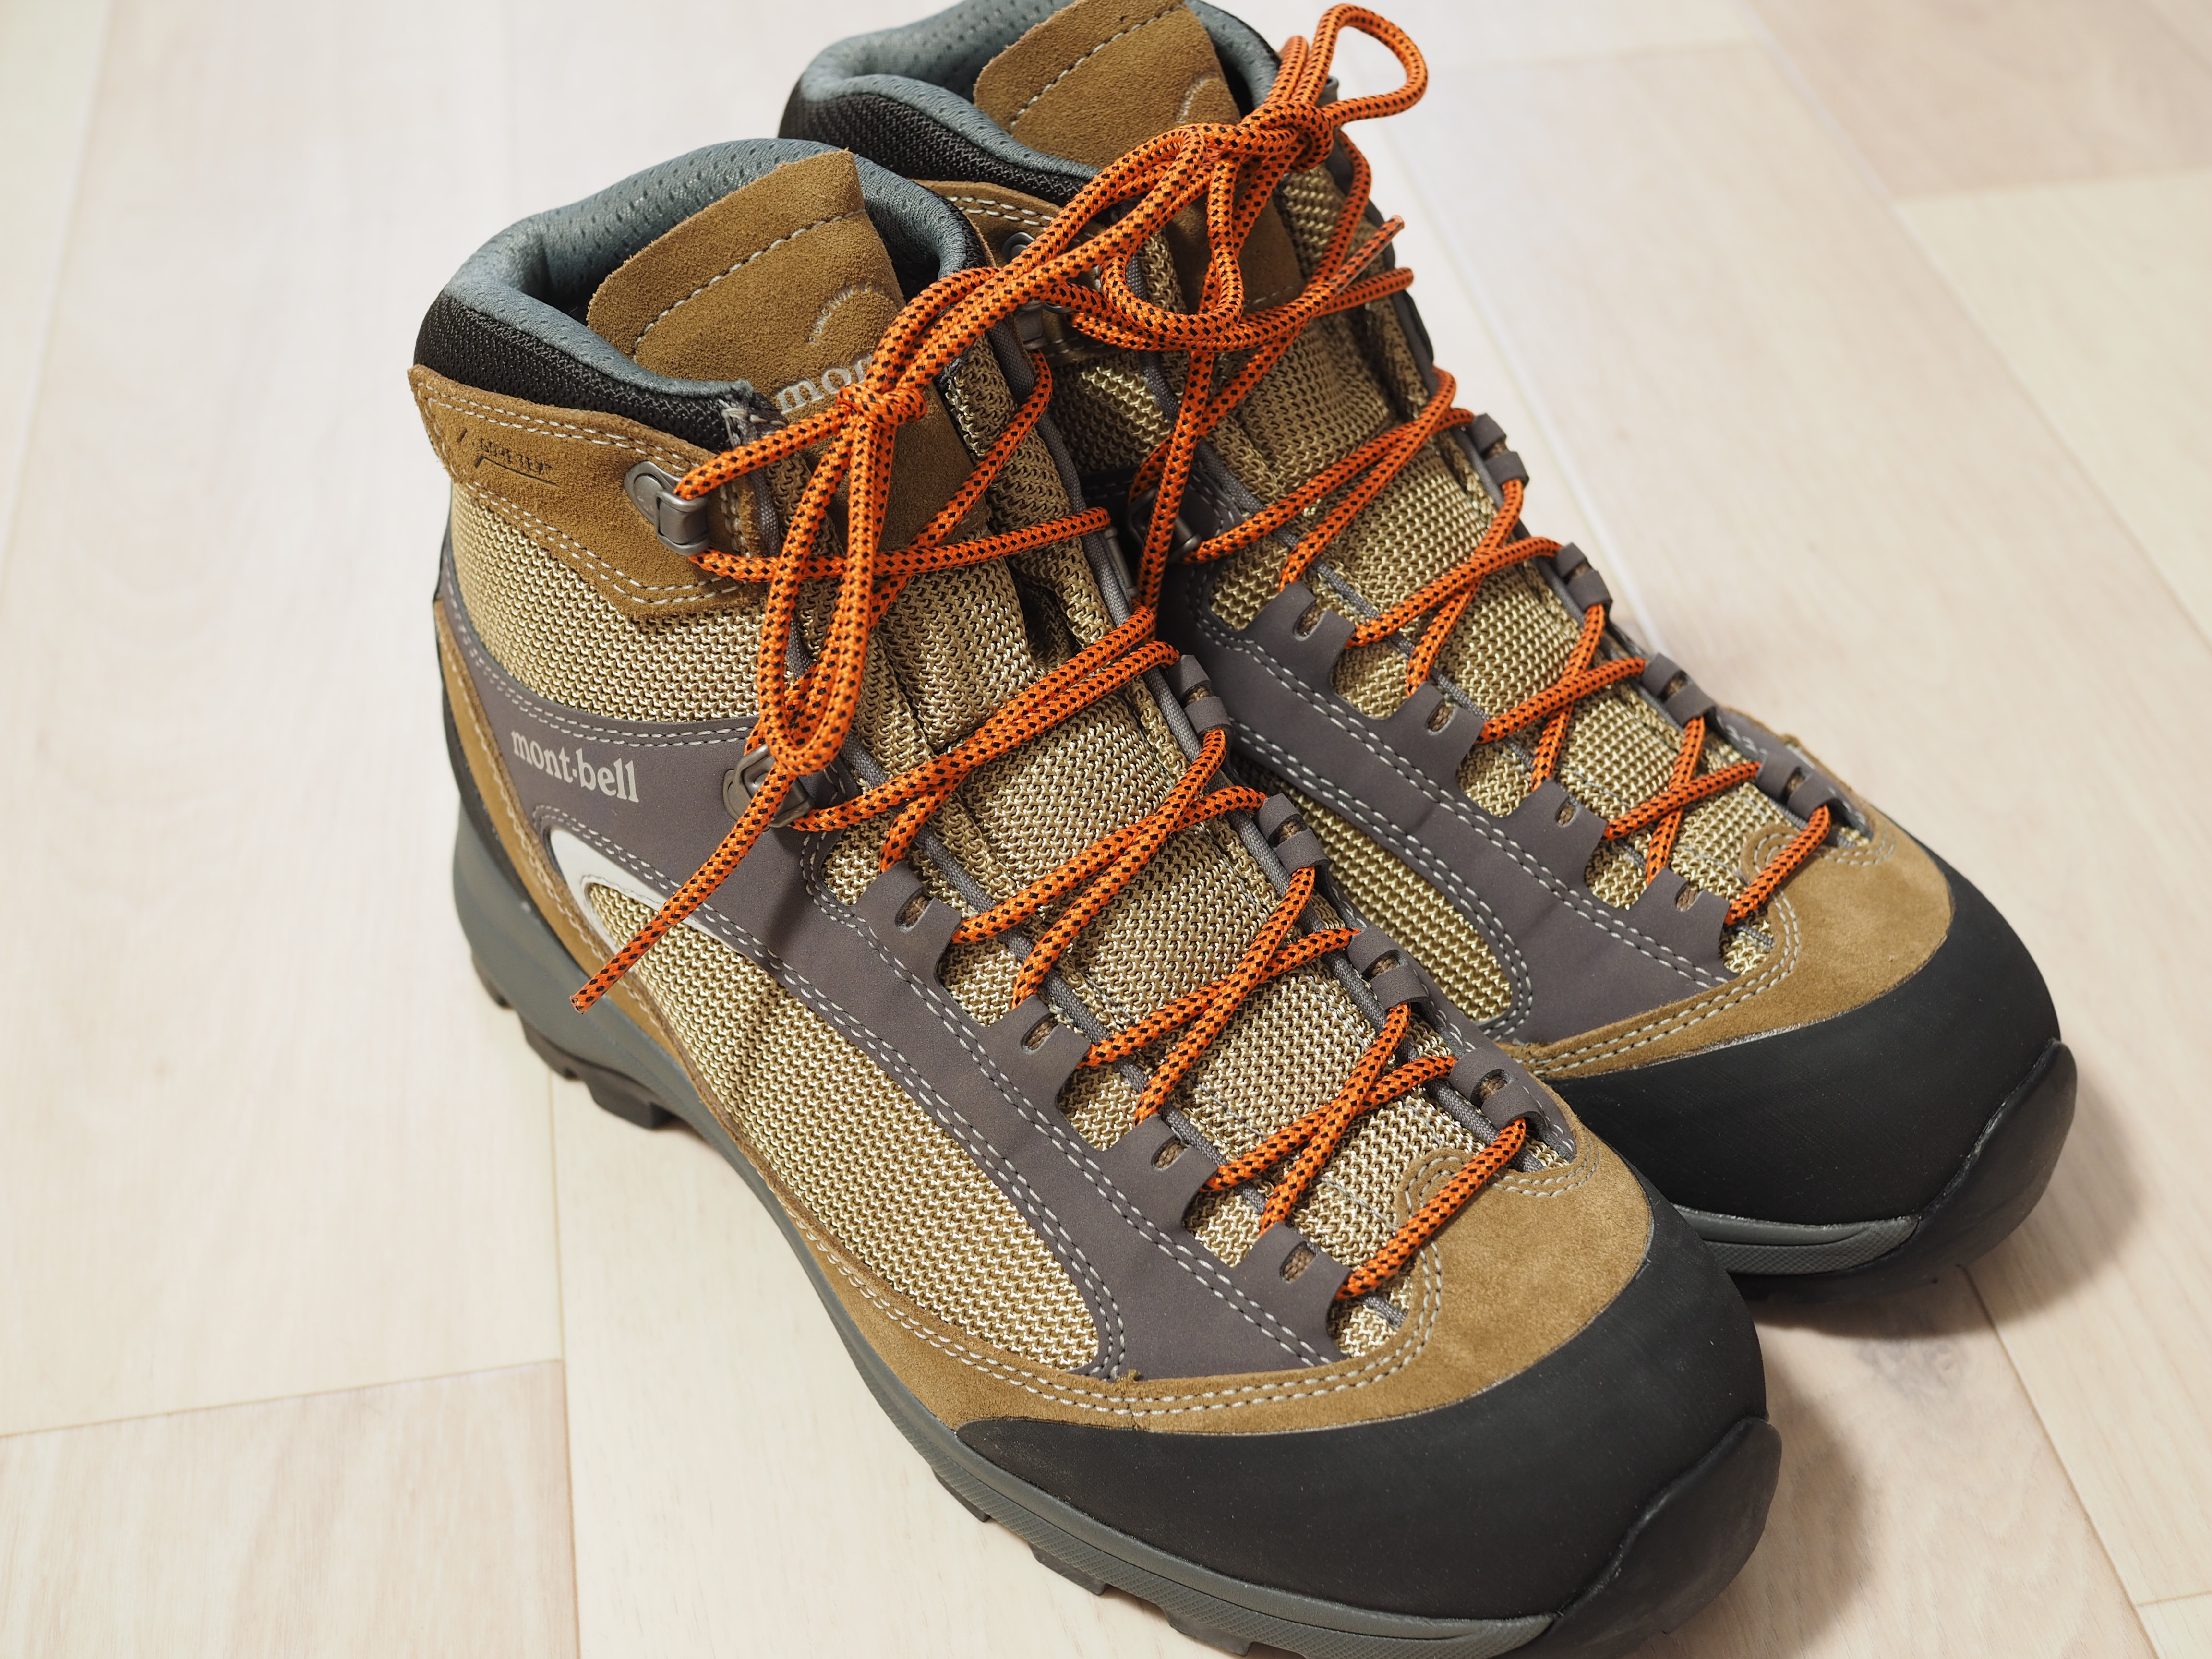 モンベル タイオガブーツを登山初心者が使ってみた感想[登山靴レビュー] |